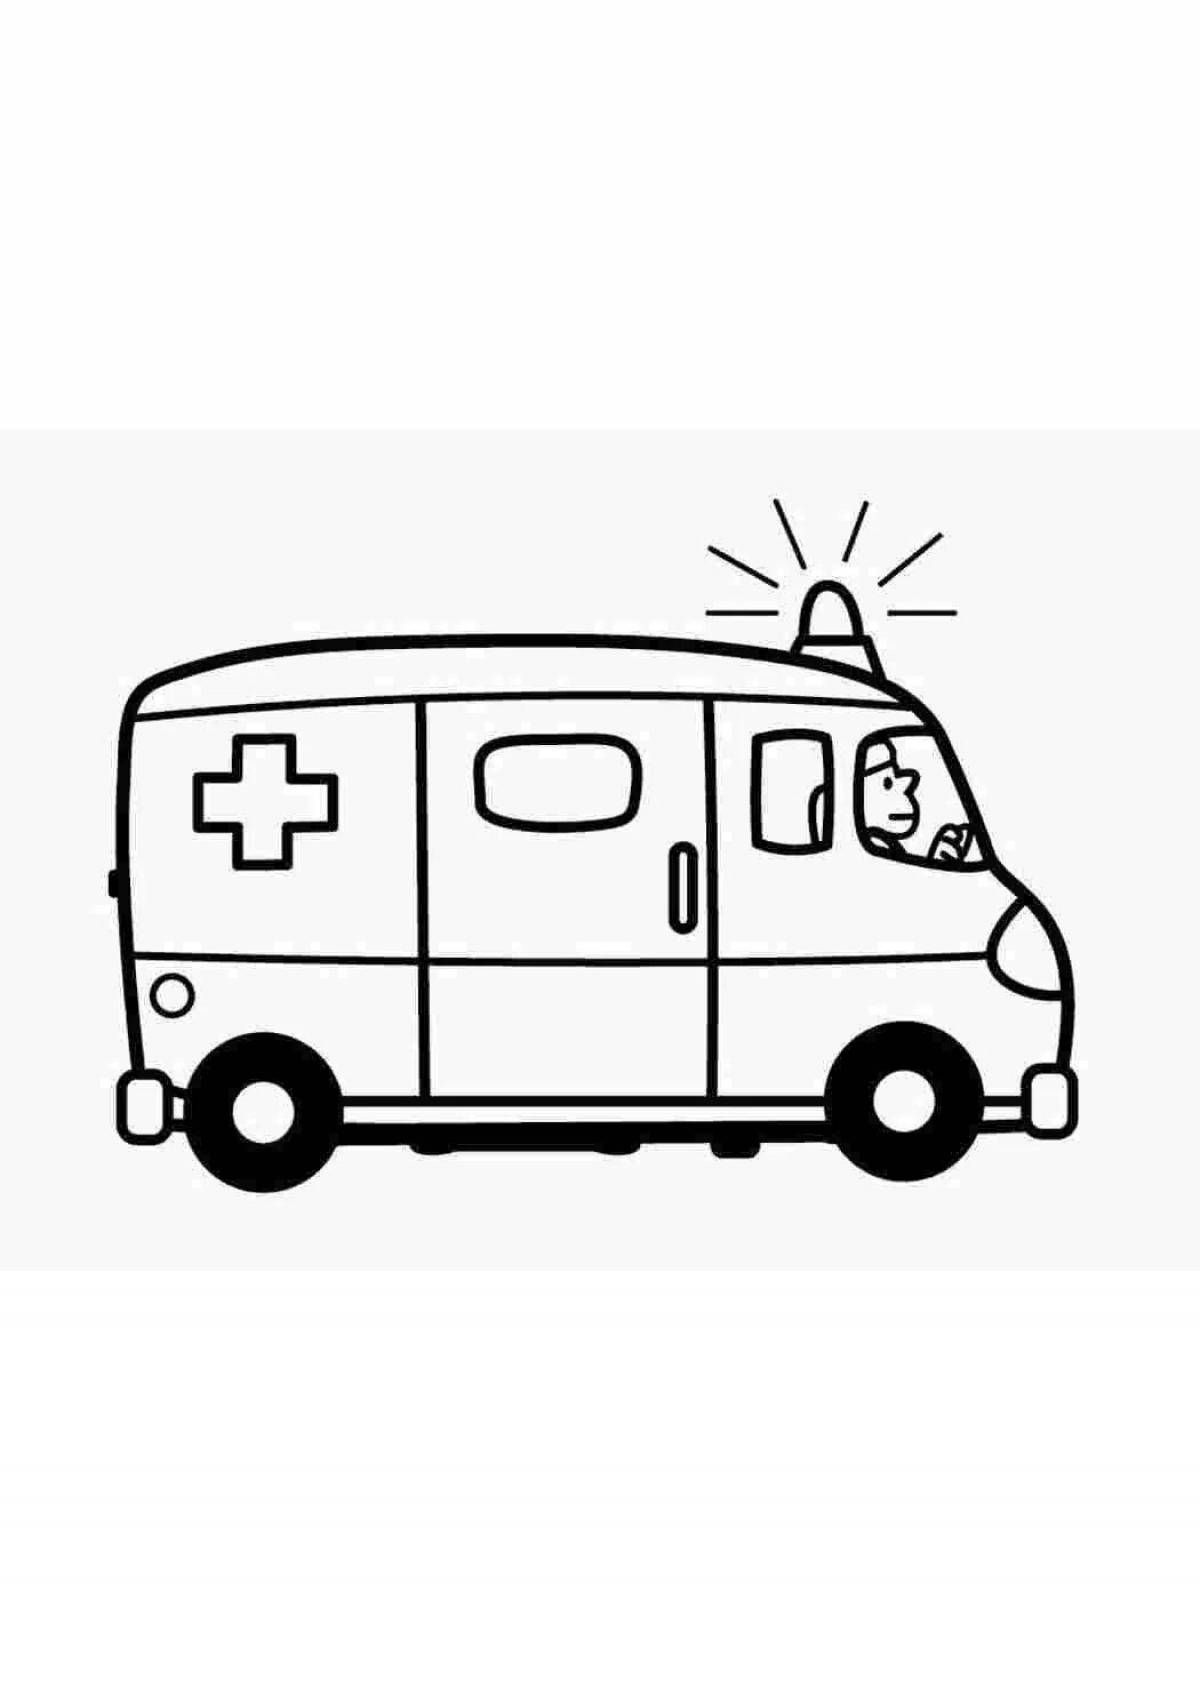 Dynamic ambulance drawing